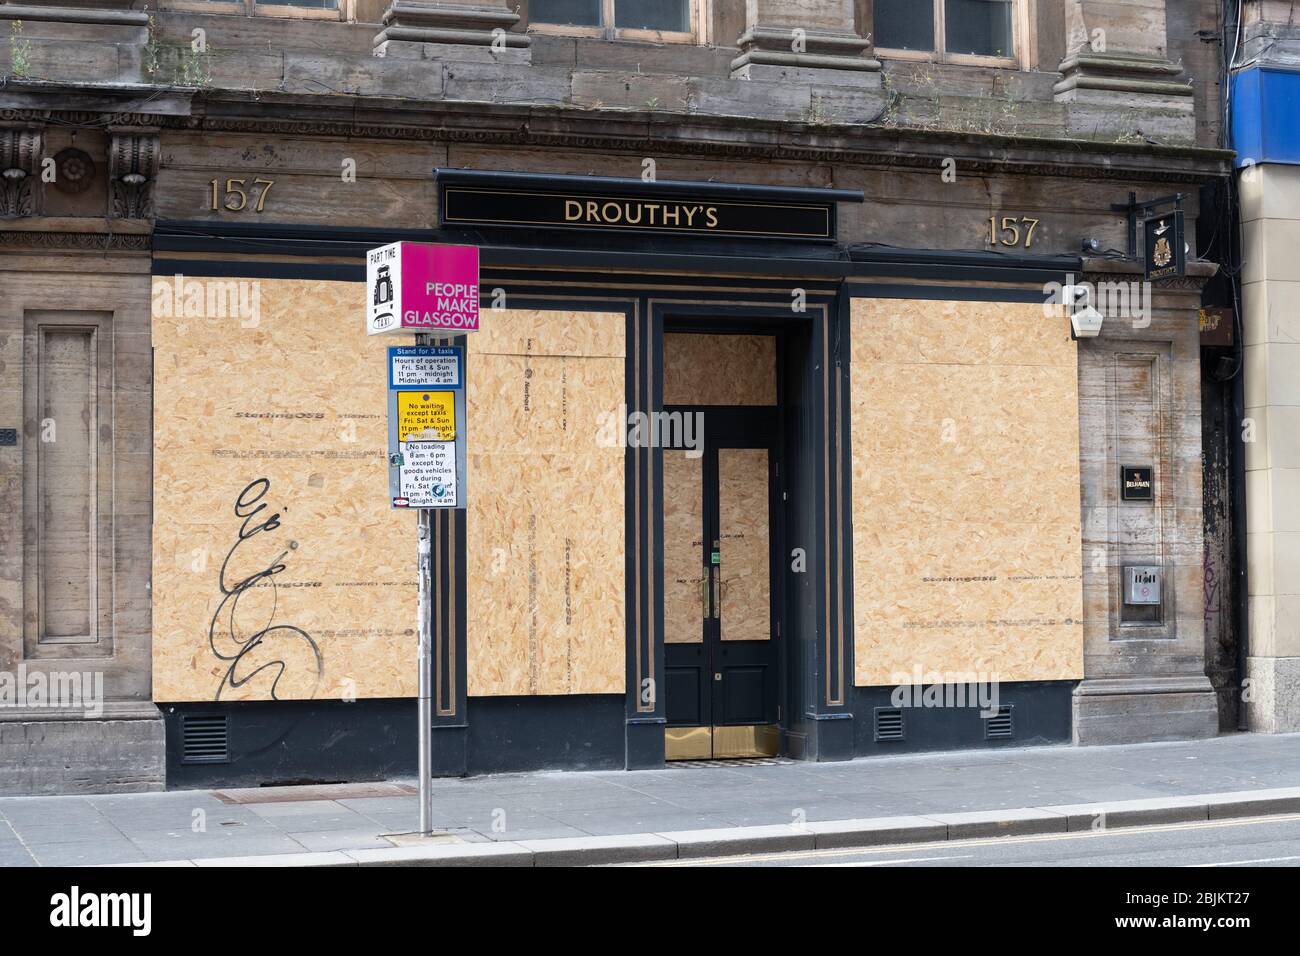 Drouthy's - un pub Belhaven, Queen Street, Glasgow - est monté à bord pendant le verrouillage pandémique du coronavirus, Écosse, Royaume-Uni Banque D'Images